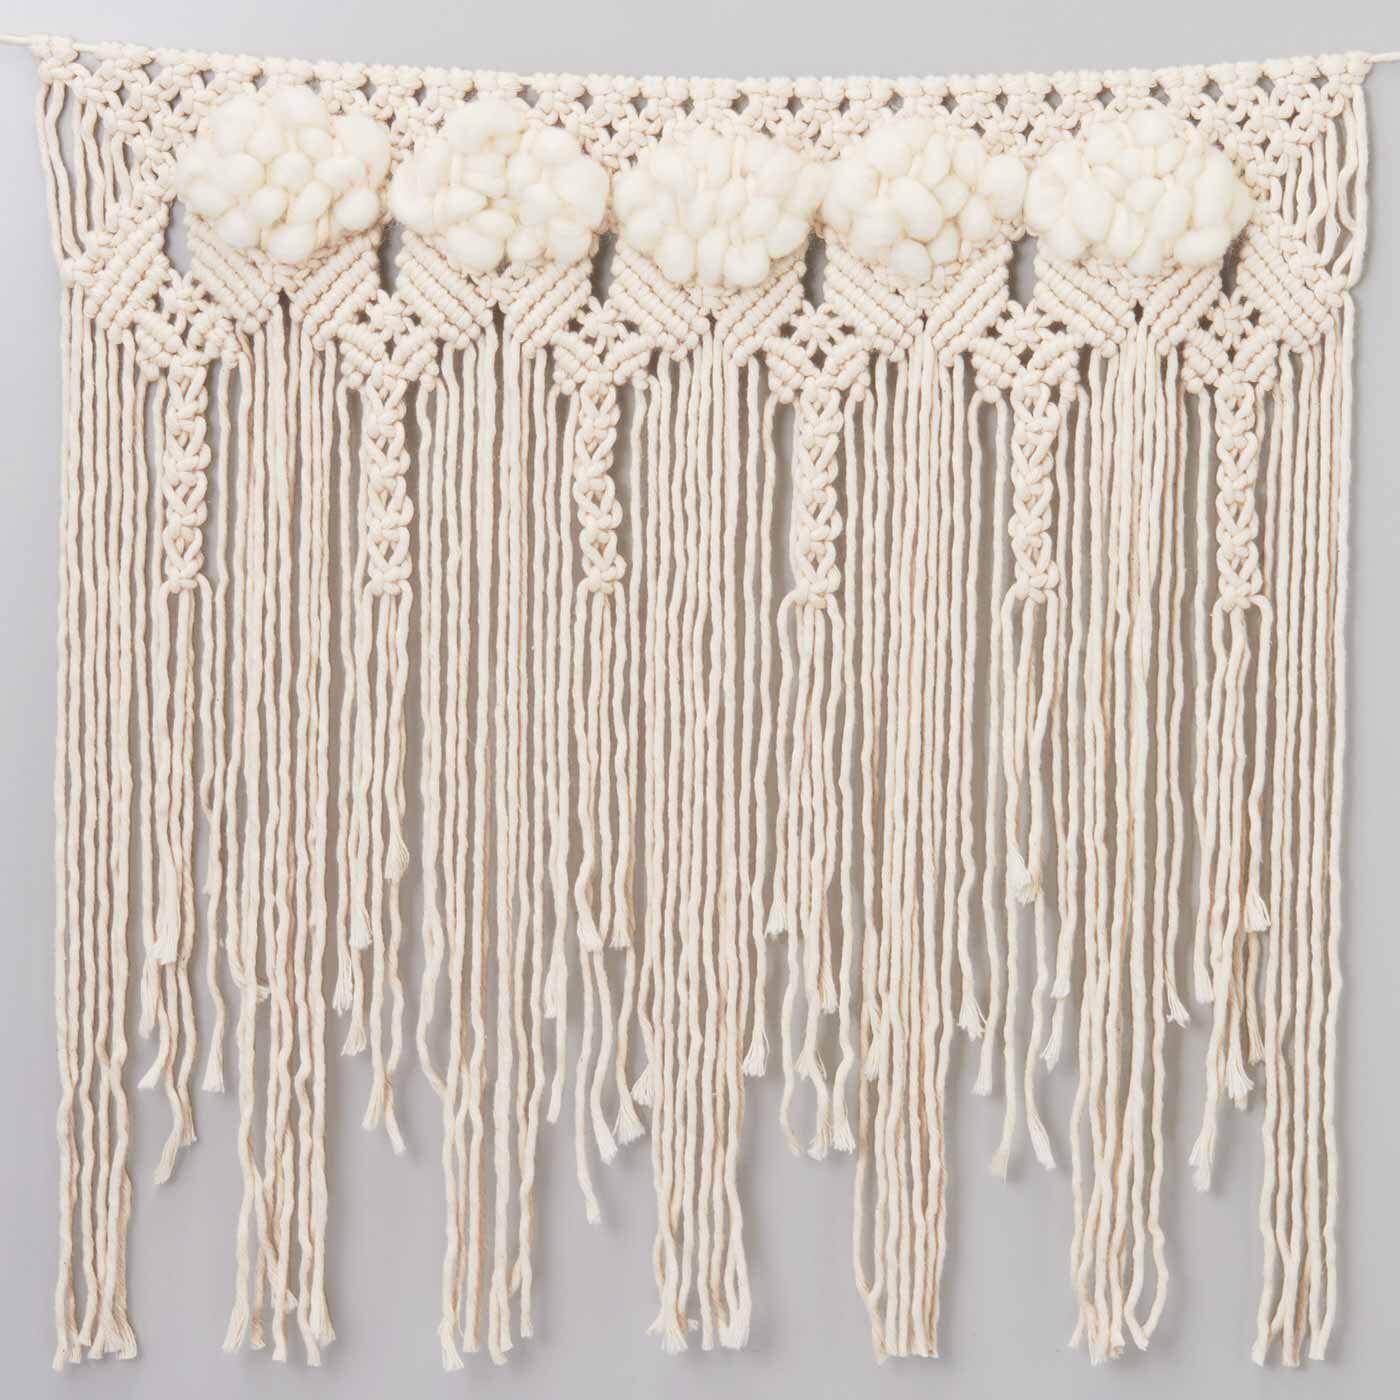 SeeMONO|やわらかい甘撚（よ）り糸で作る マクラメガーランドキットの会|巻き結びとパイル織り